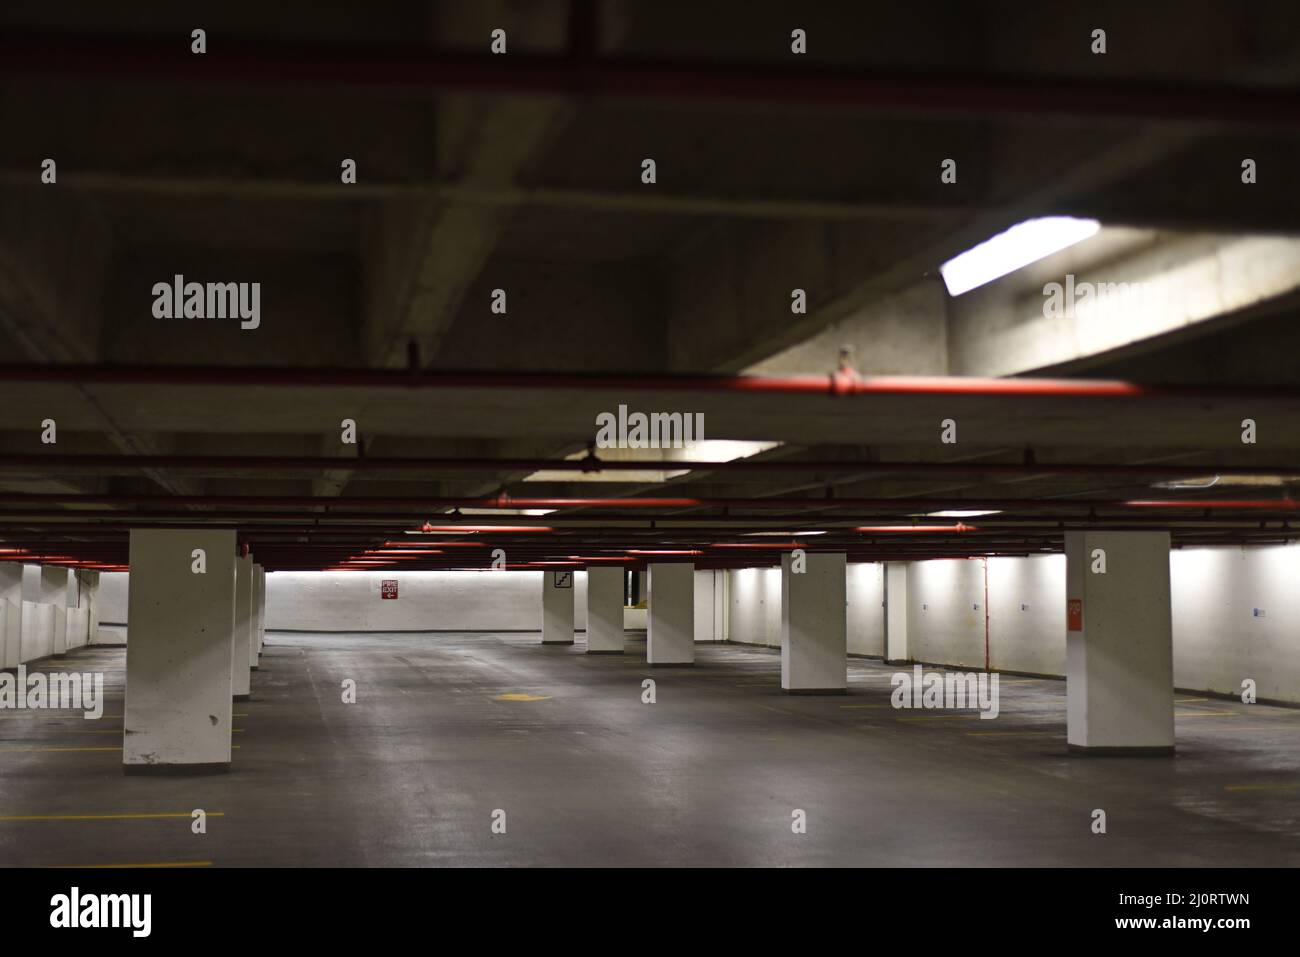 An underground parking garage with empty parking stalls Stock Photo